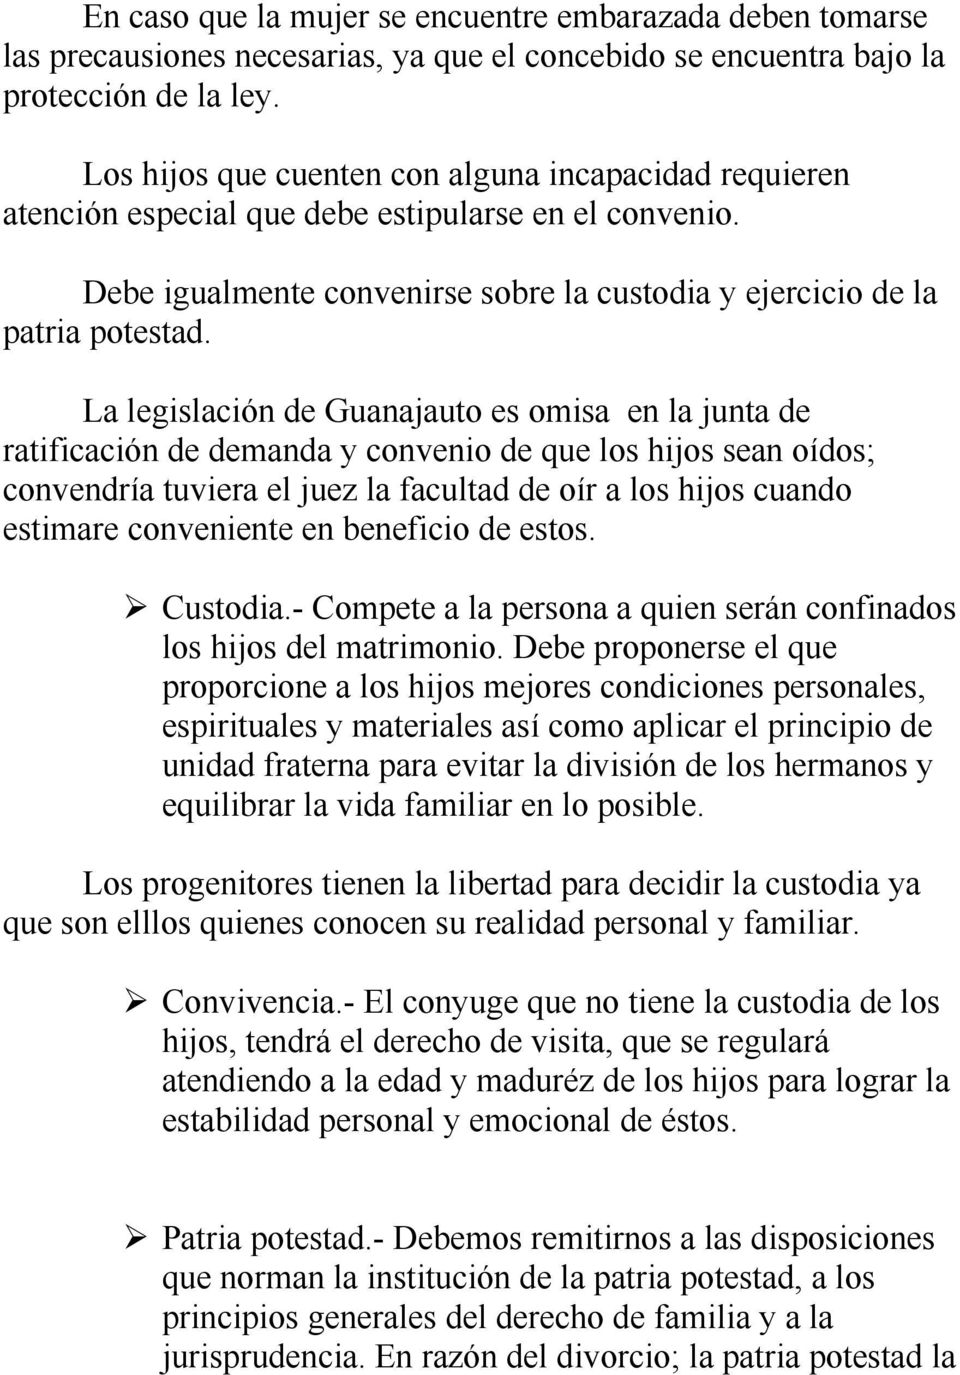 La legislación de Guanajauto es omisa en la junta de ratificación de demanda y convenio de que los hijos sean oídos; convendría tuviera el juez la facultad de oír a los hijos cuando estimare